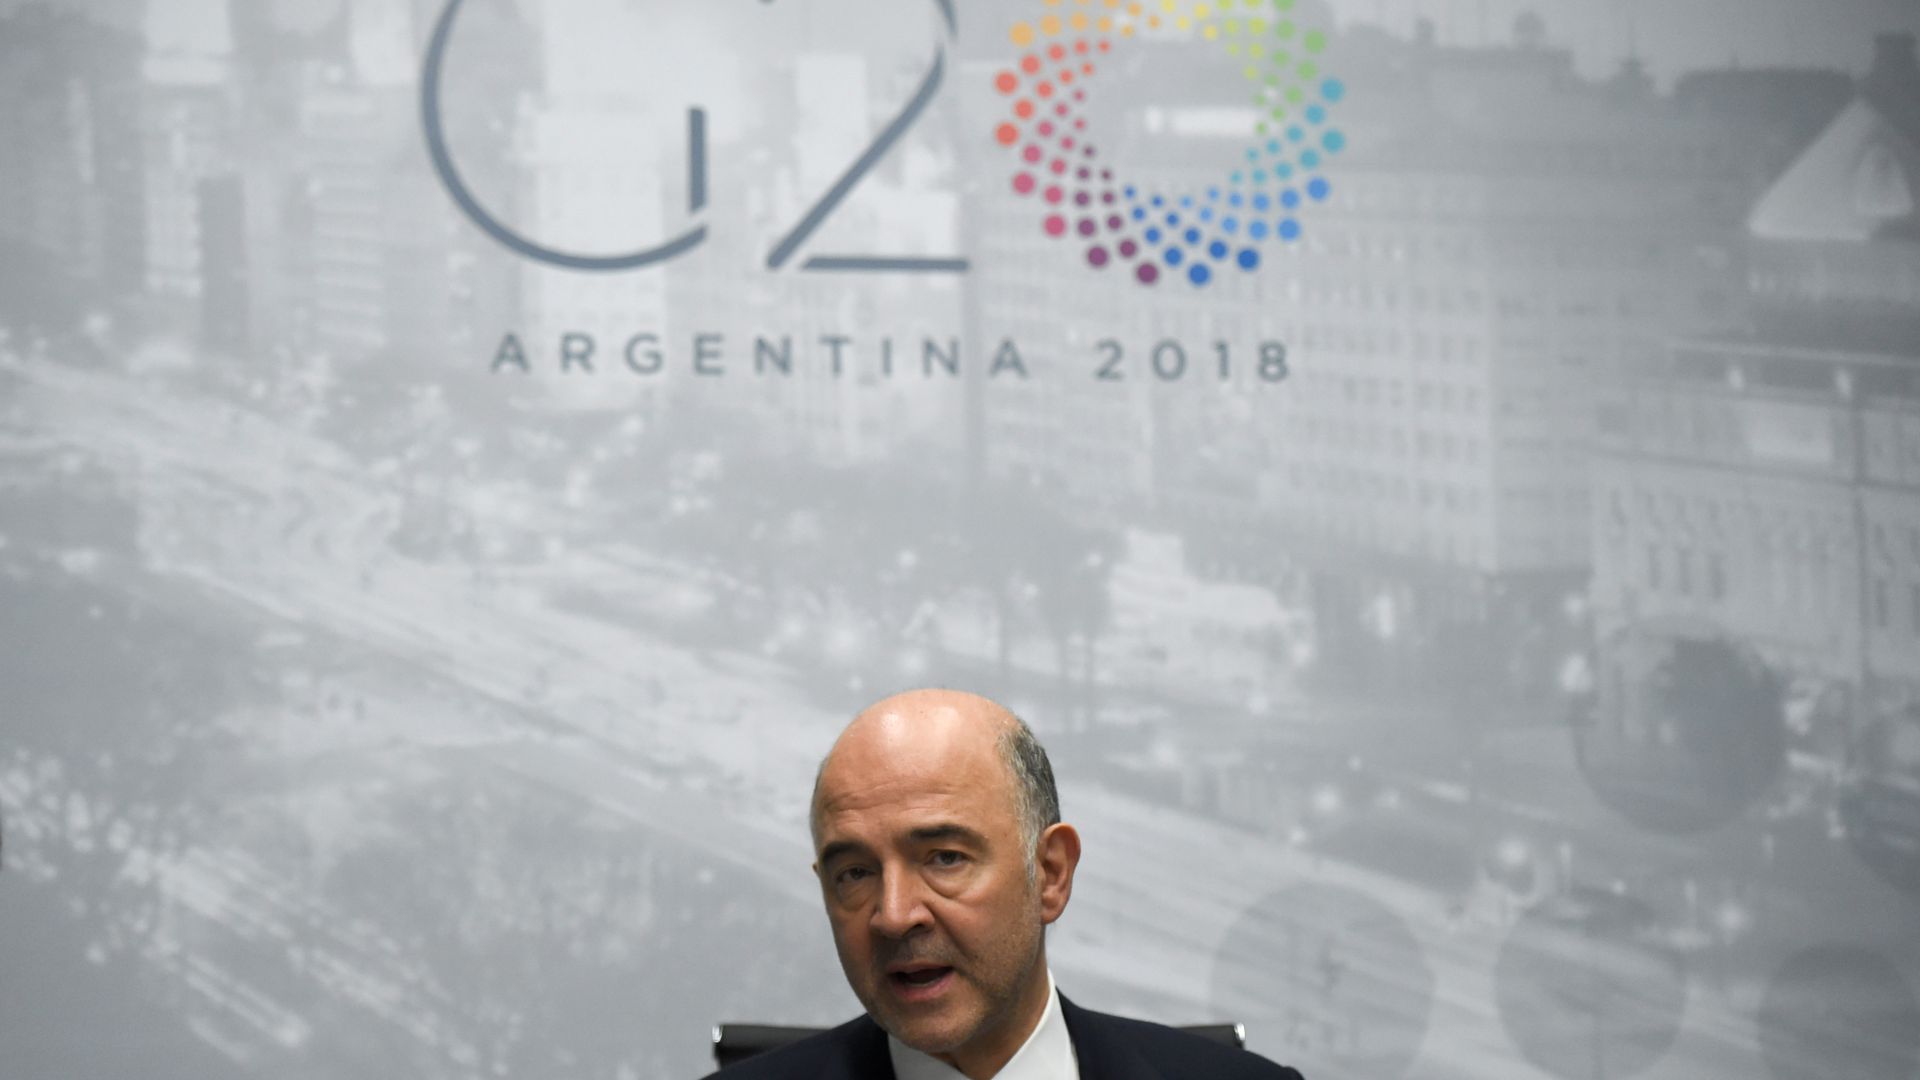 El G20 llama al diálogo ante el riesgo de una guerra comercial que amenaza la economía internacional